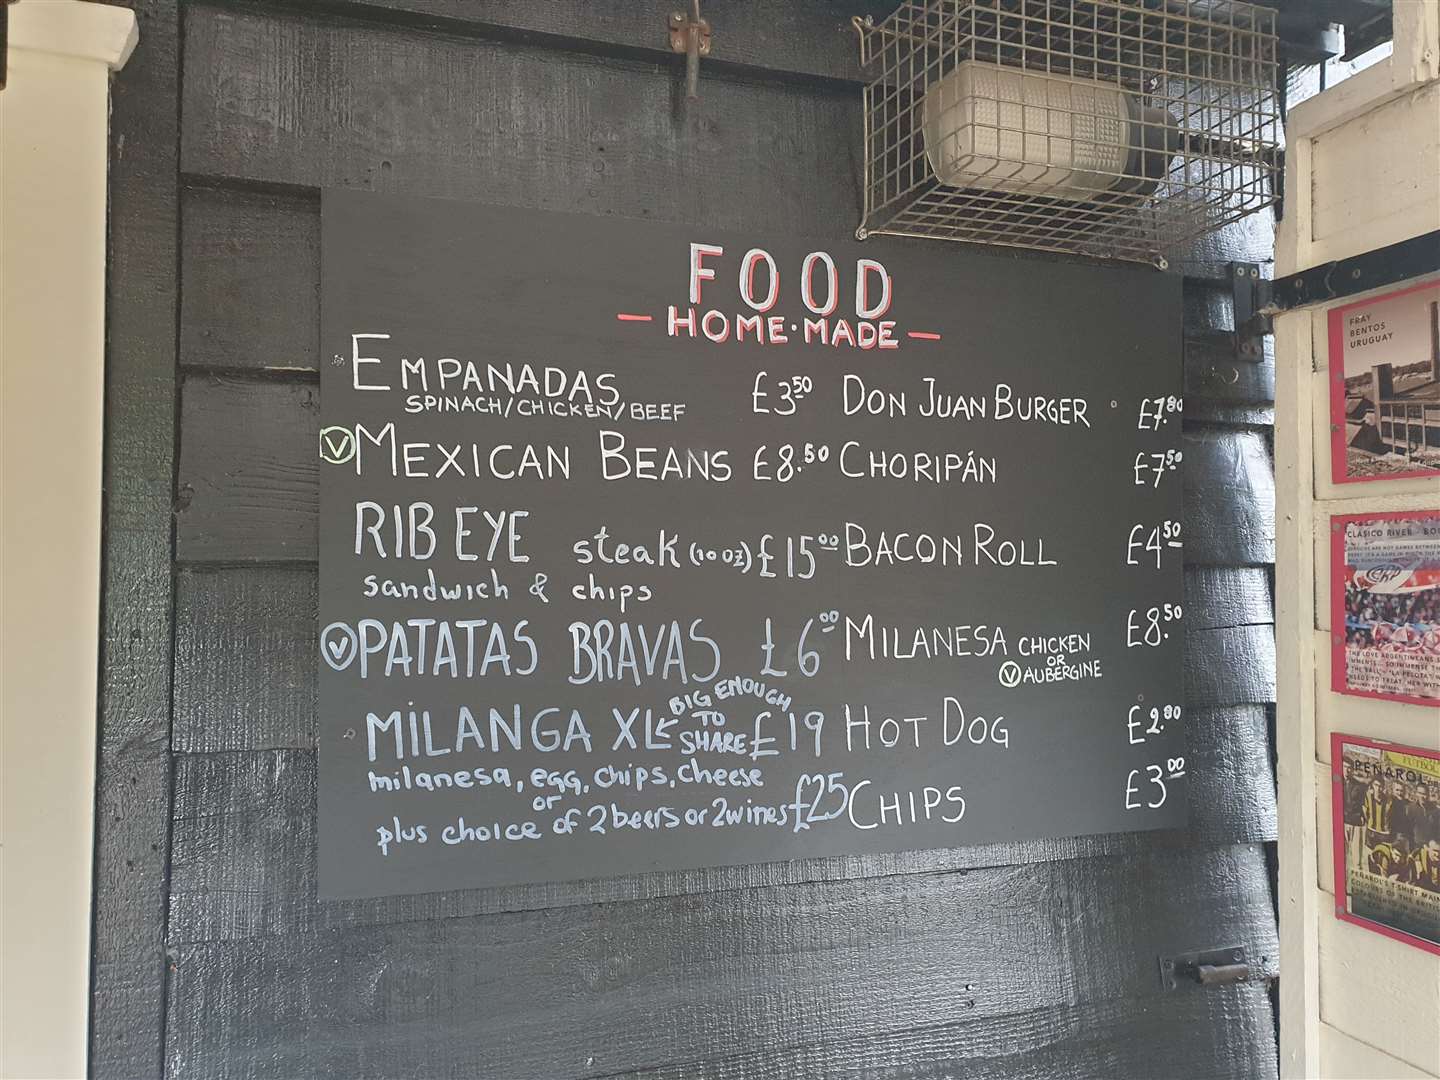 The menu at Canterbury's Don Juan café